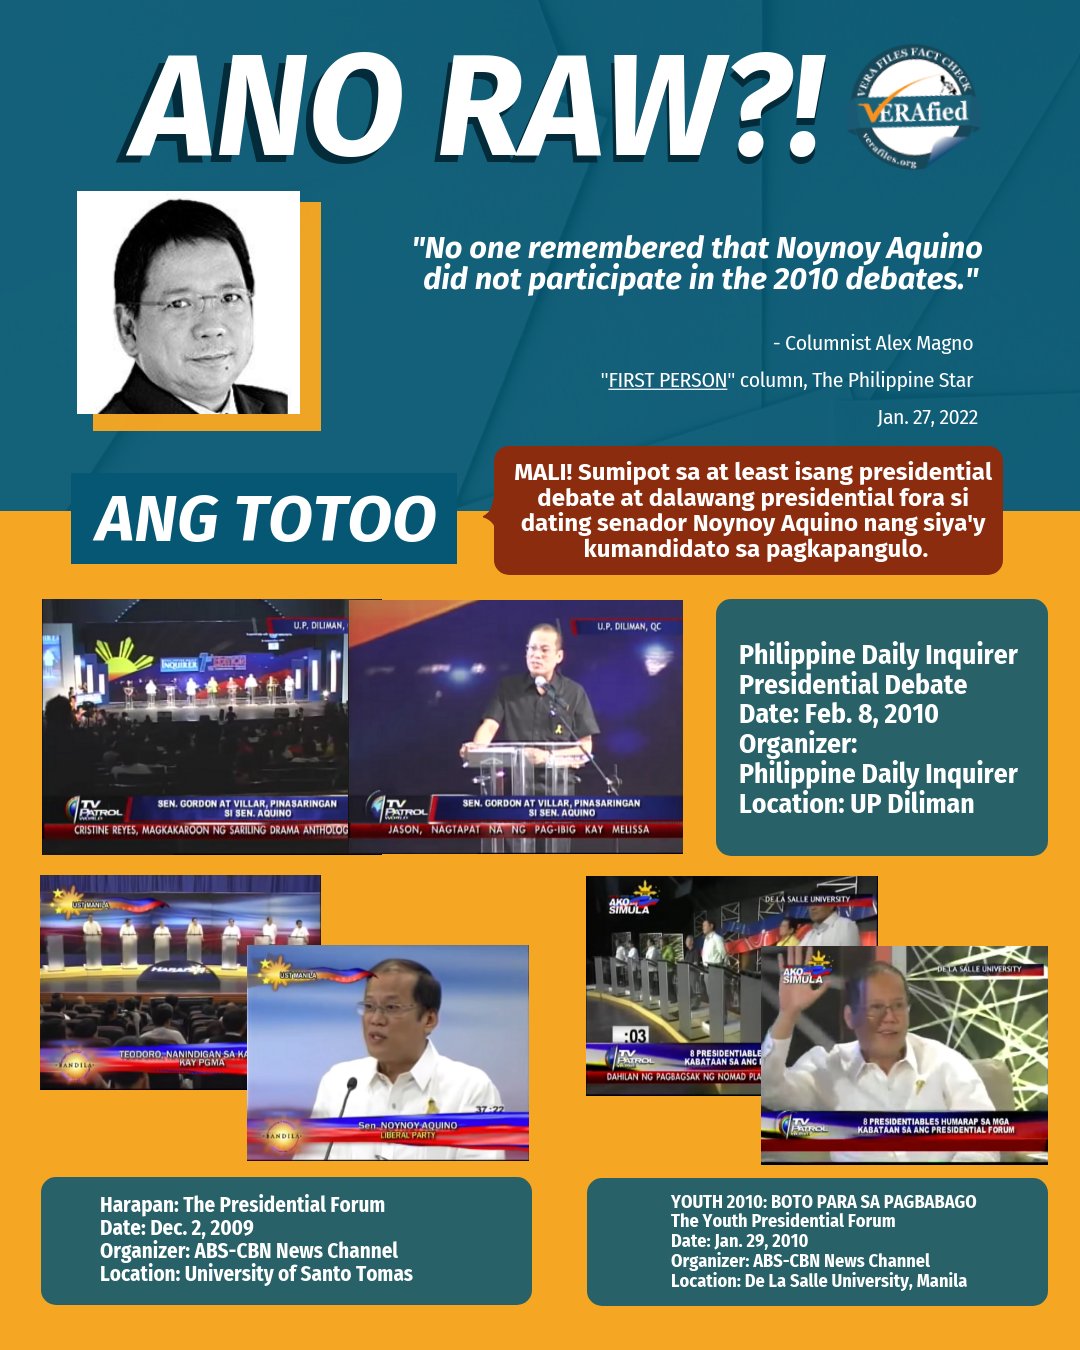 #VERAfied: Kolumnistang si Magno mali ang sinasabi na hindi sumipot si PNoy sa 2010 presidential debates